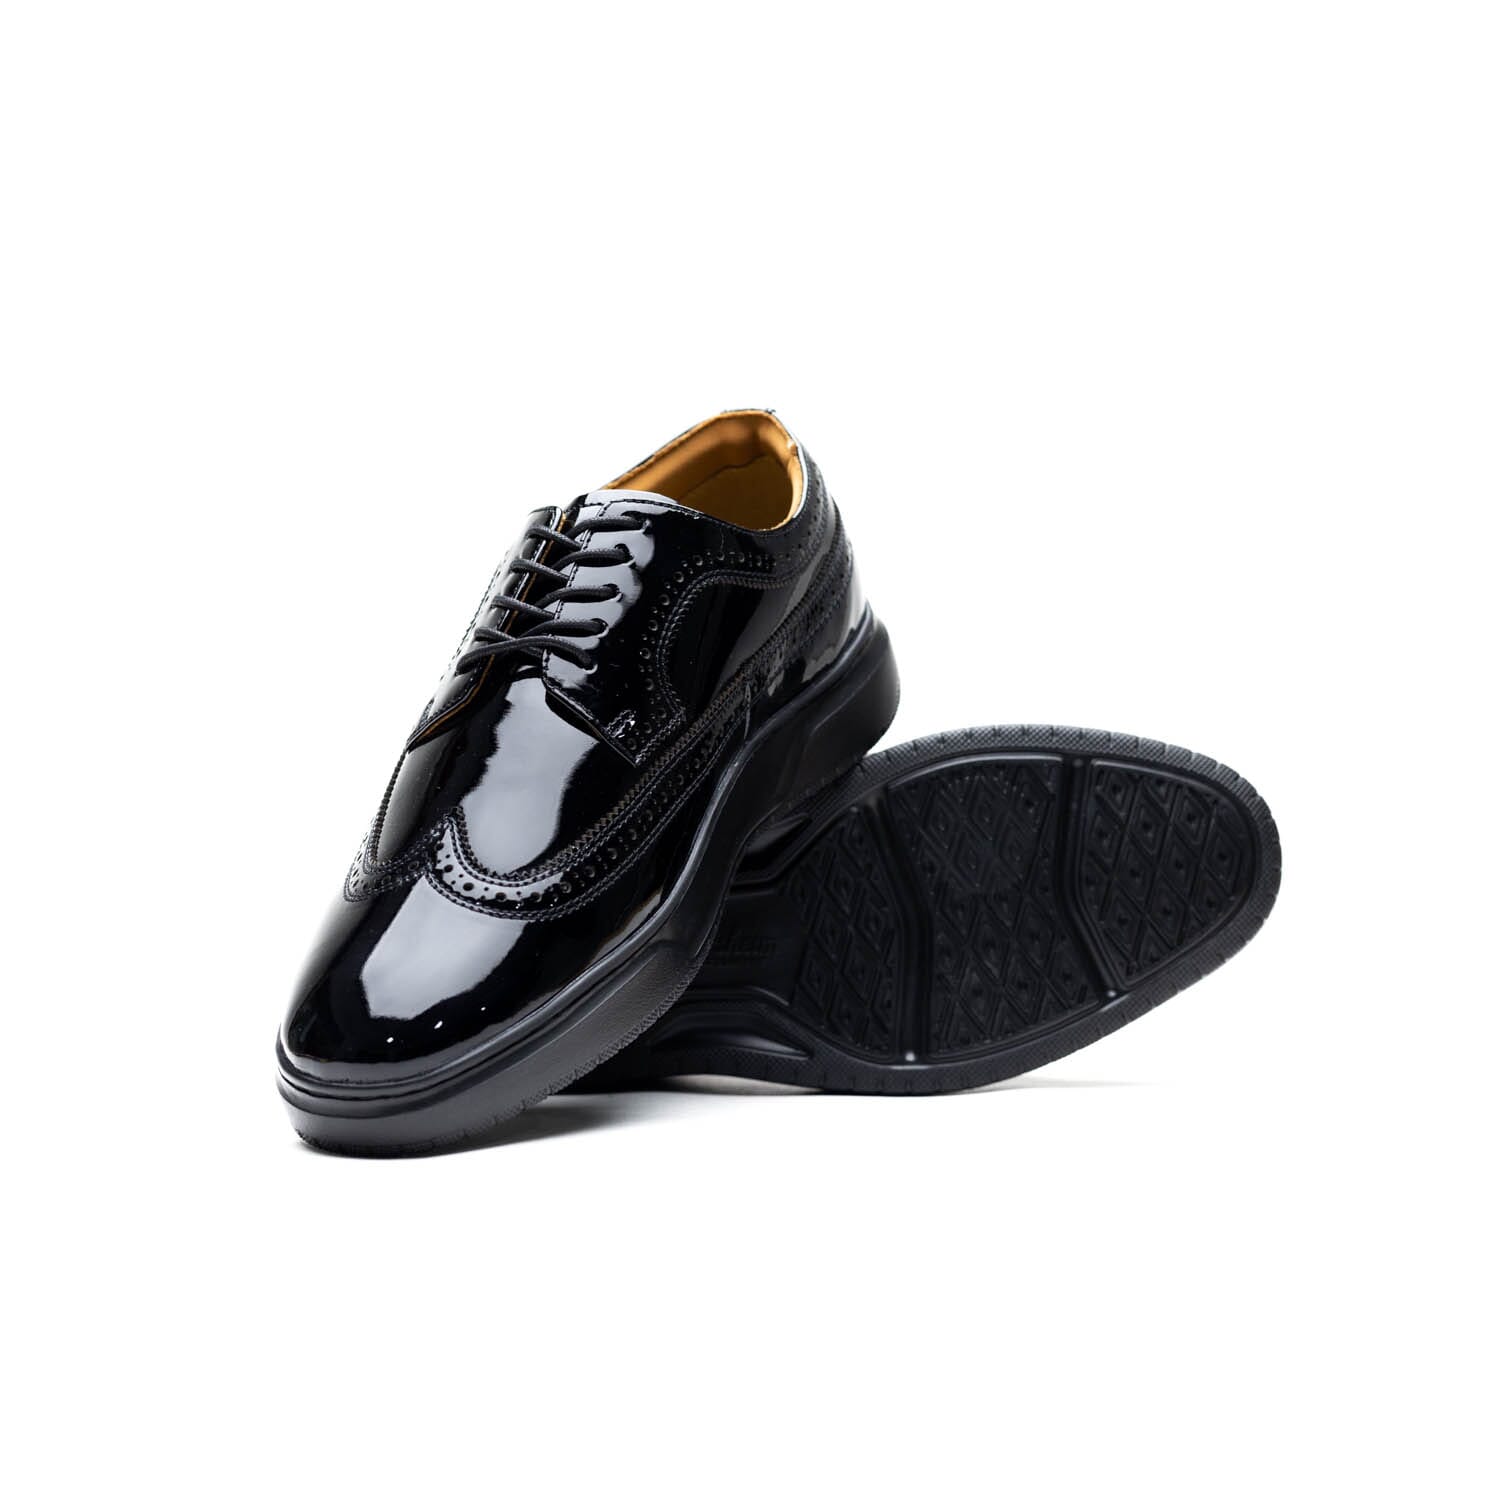 FLORSHEIM -PREMIER WING -BLACK PATENT – Perocili Shoes